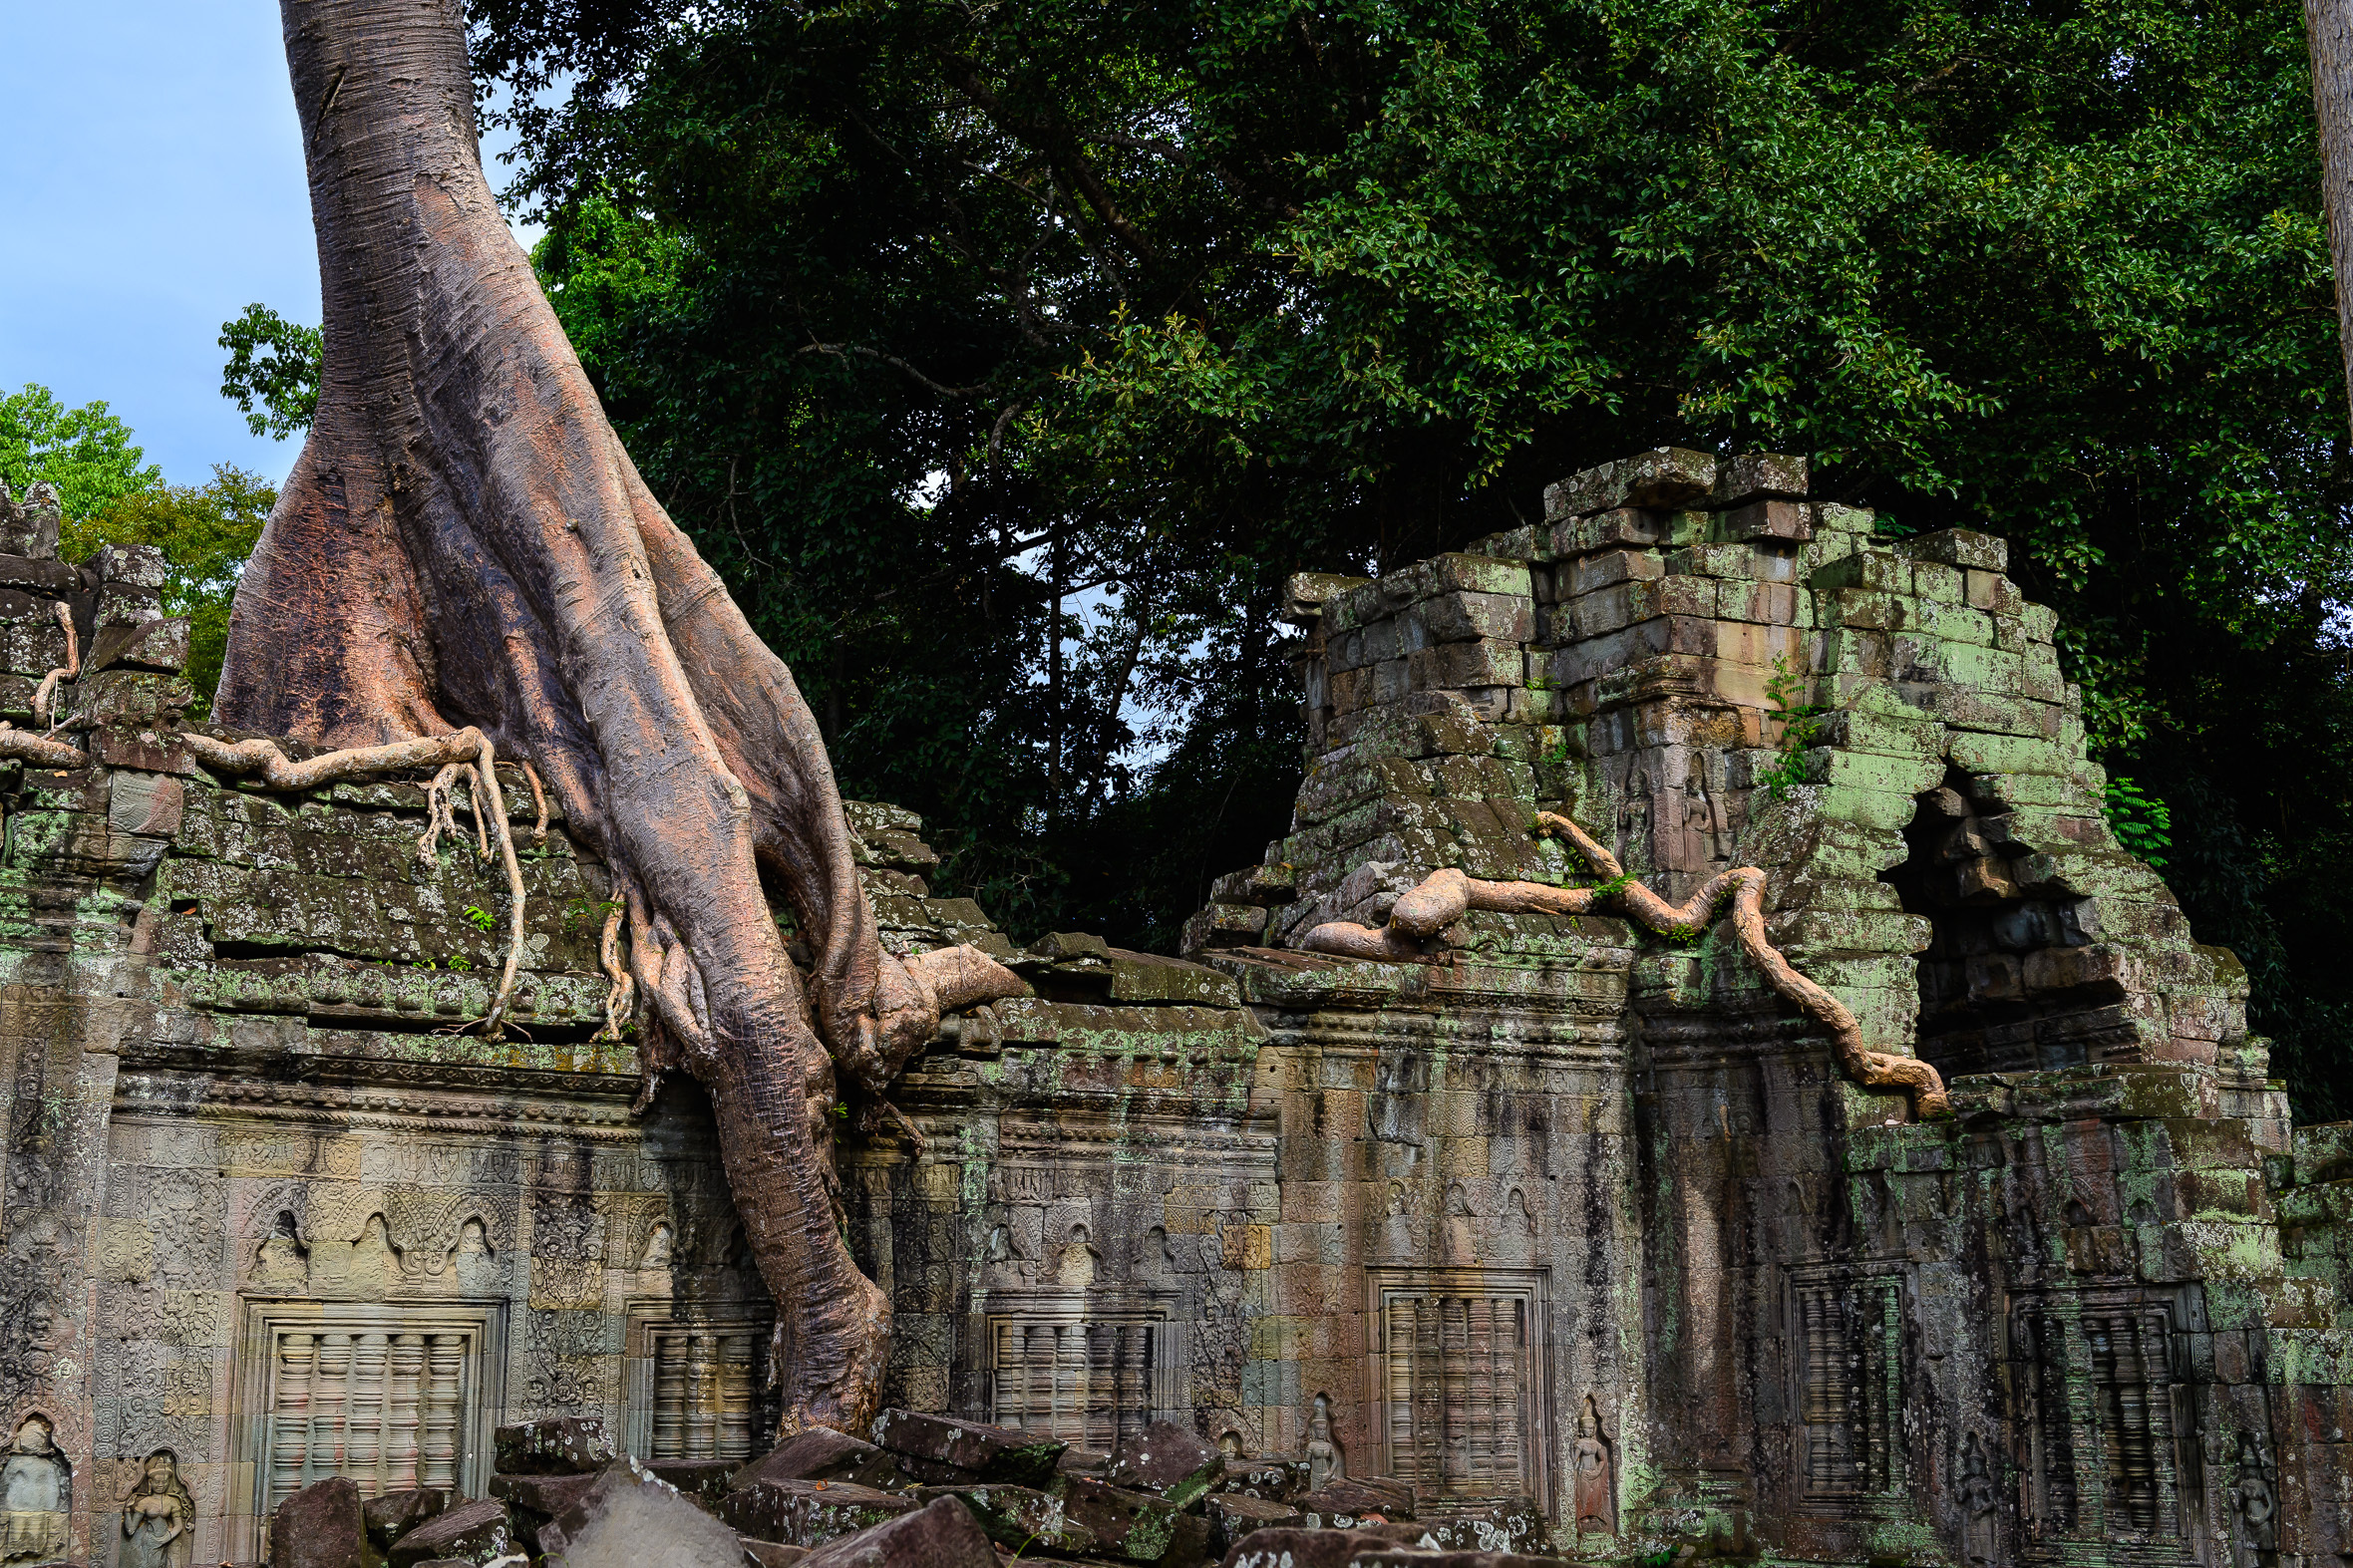 Running Tree of Preah Khan